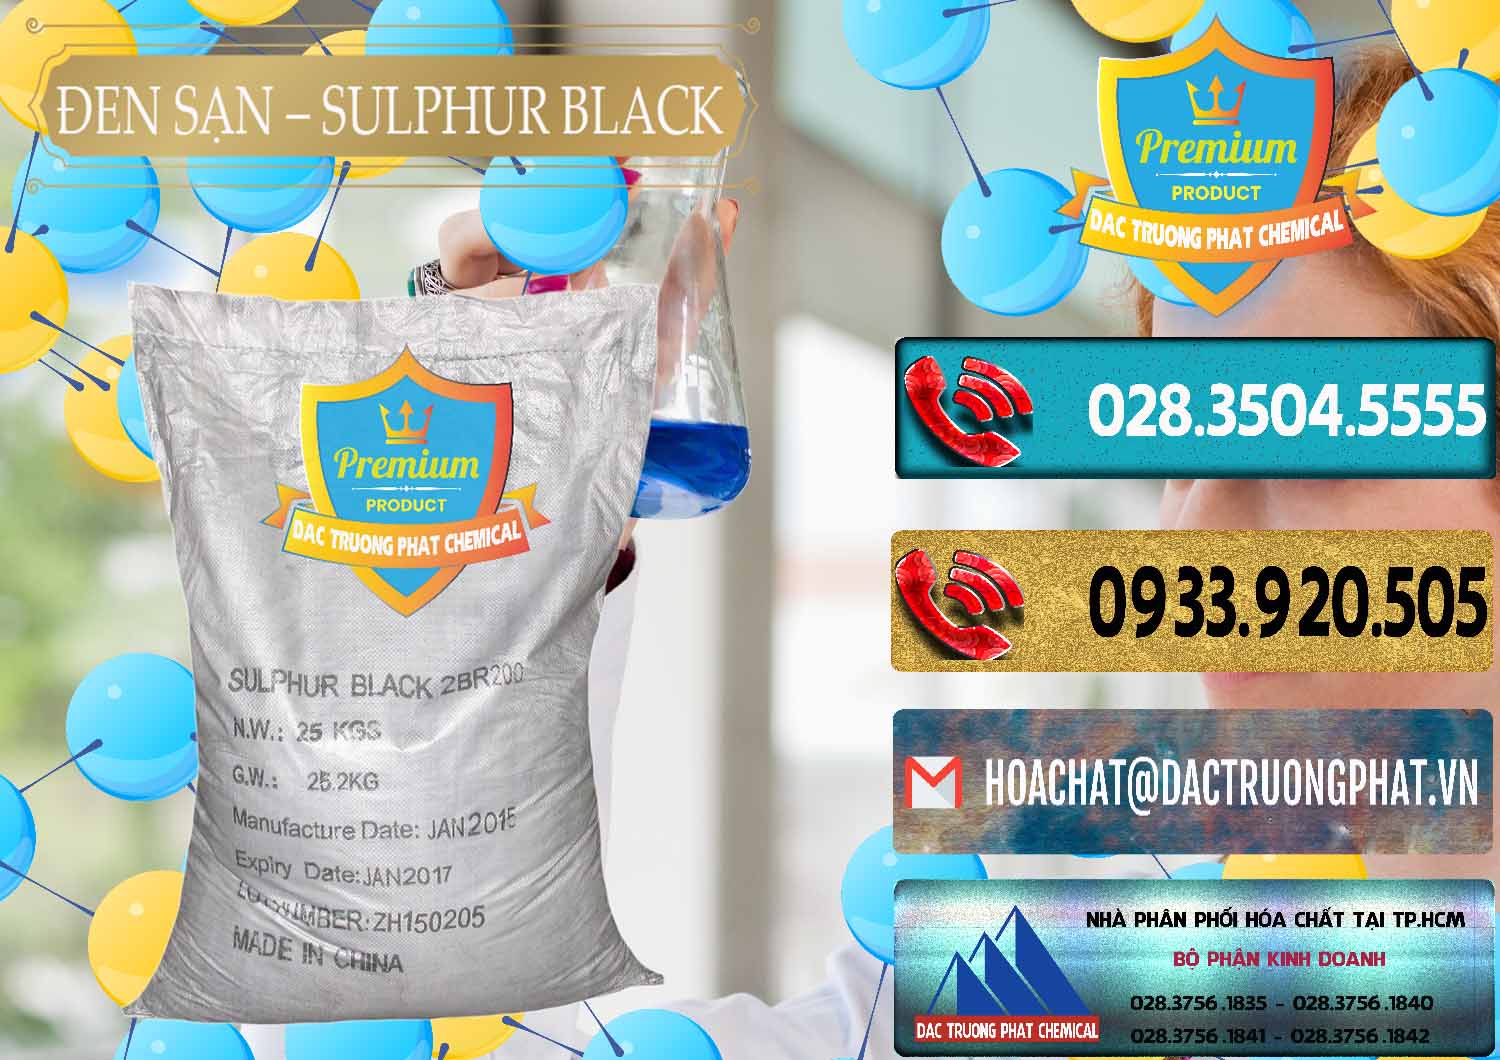 Công ty chuyên kinh doanh _ bán Đen Sạn – Sulphur Black Trung Quốc China - 0062 - Chuyên phân phối _ cung cấp hóa chất tại TP.HCM - hoachatdetnhuom.com